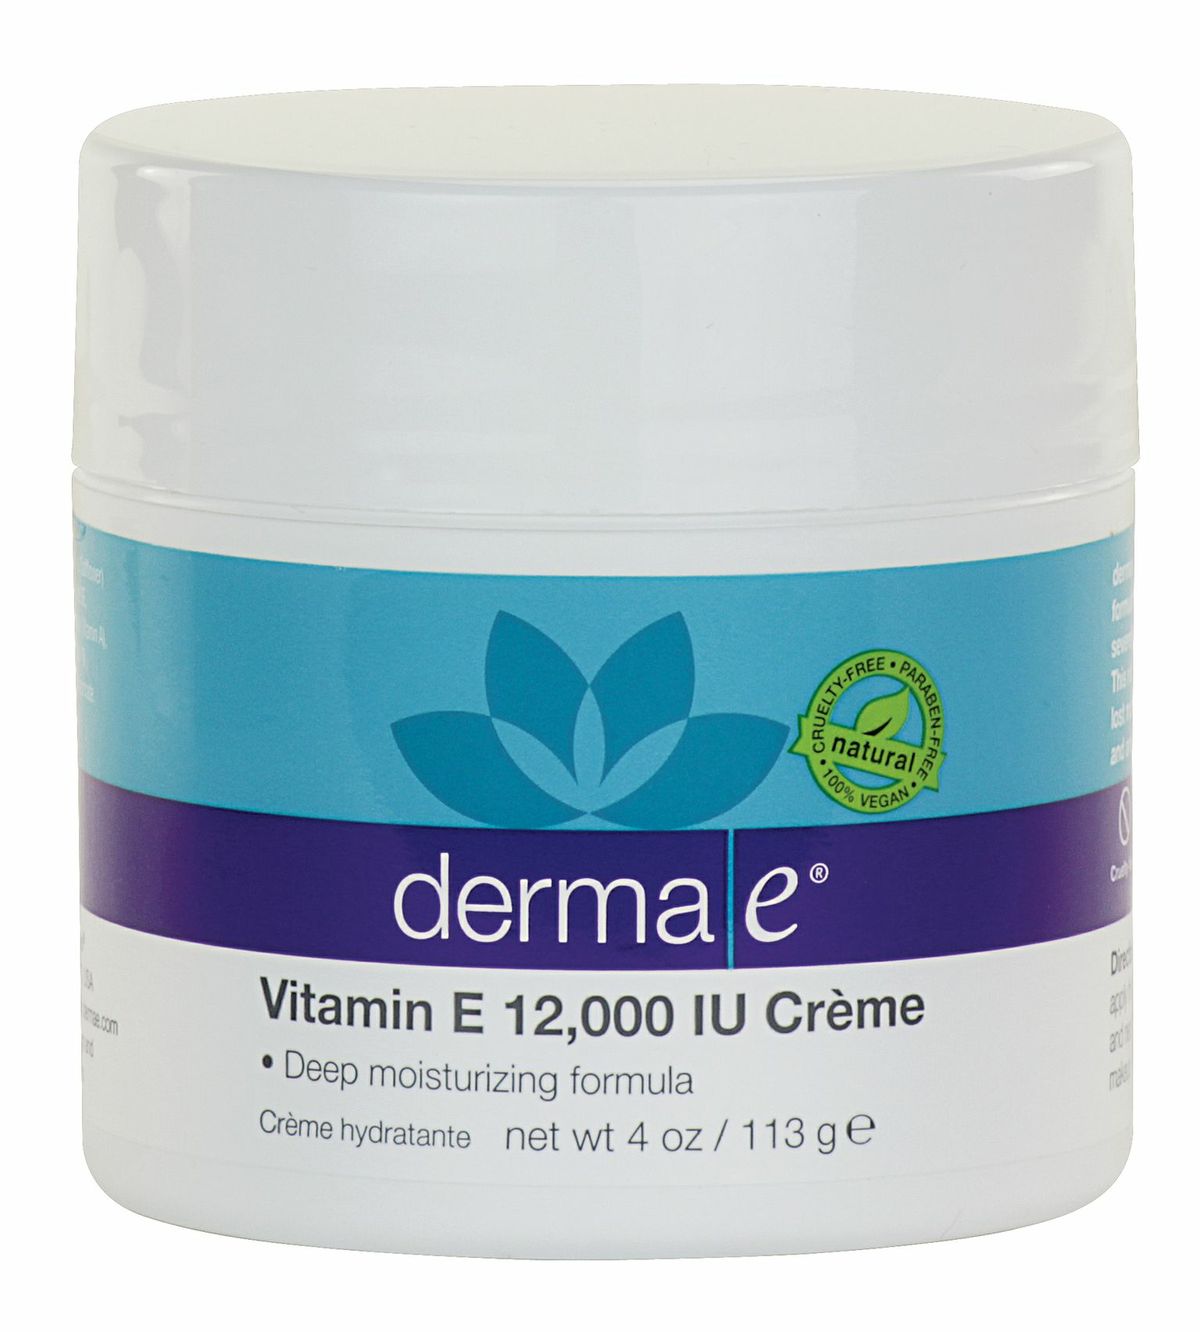 derma e® Vitamin E 12,000 IU Crème